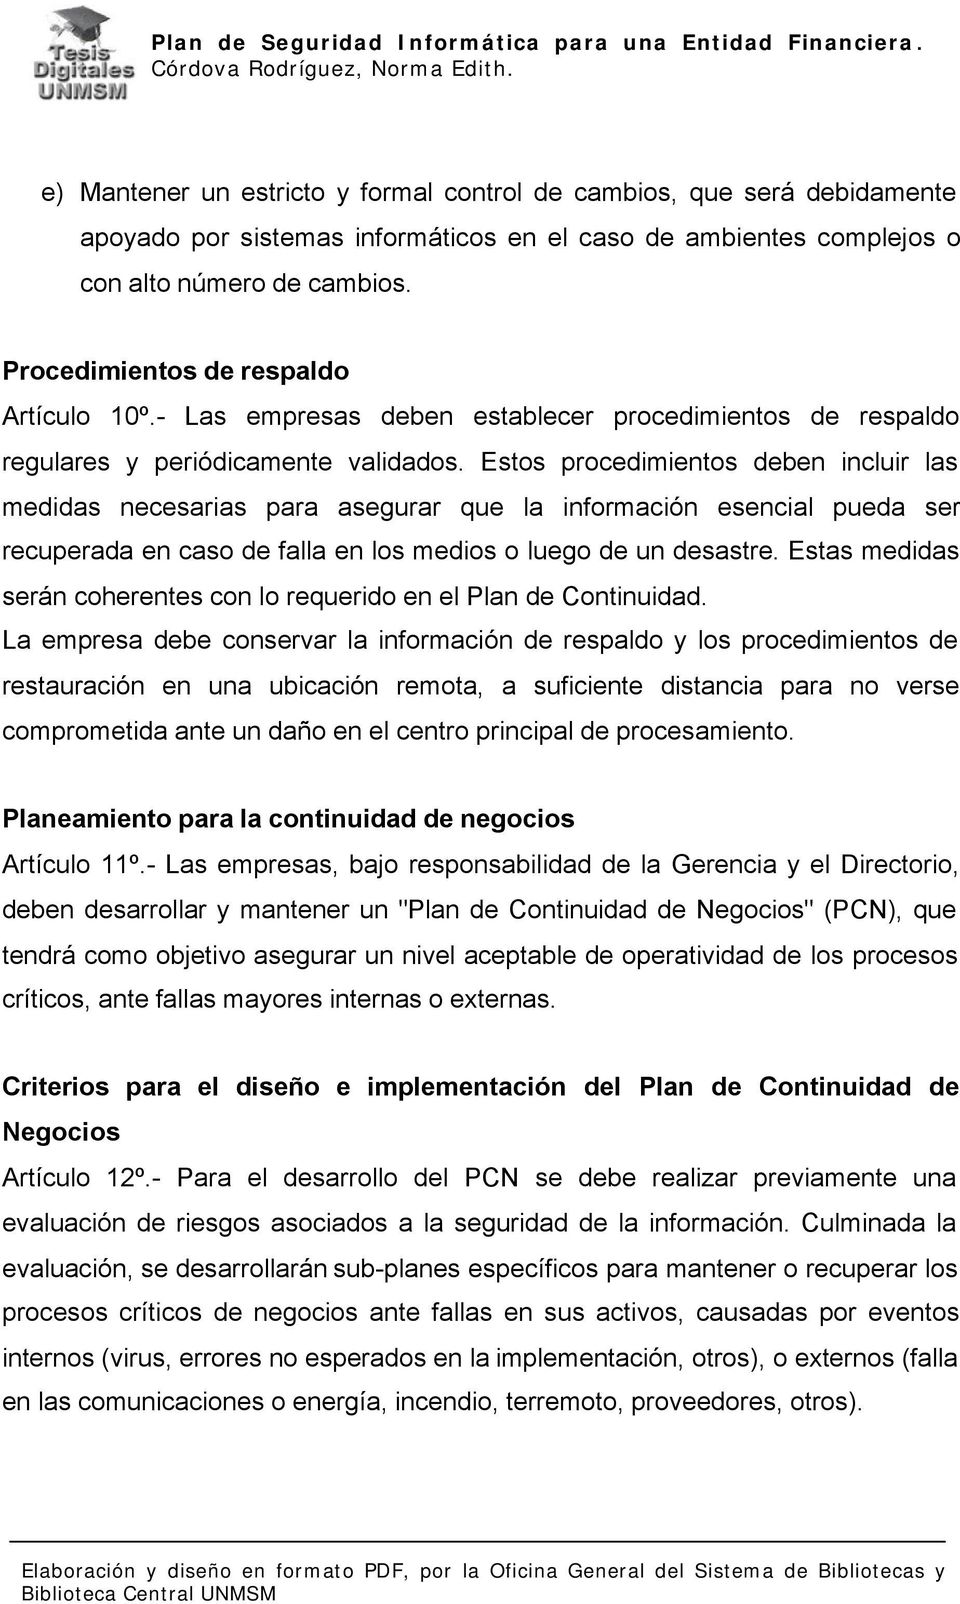 Plan de Seguridad Informática para una Entidad Financiera. Córdova  Rodríguez, Norma Edith. - PDF Free Download